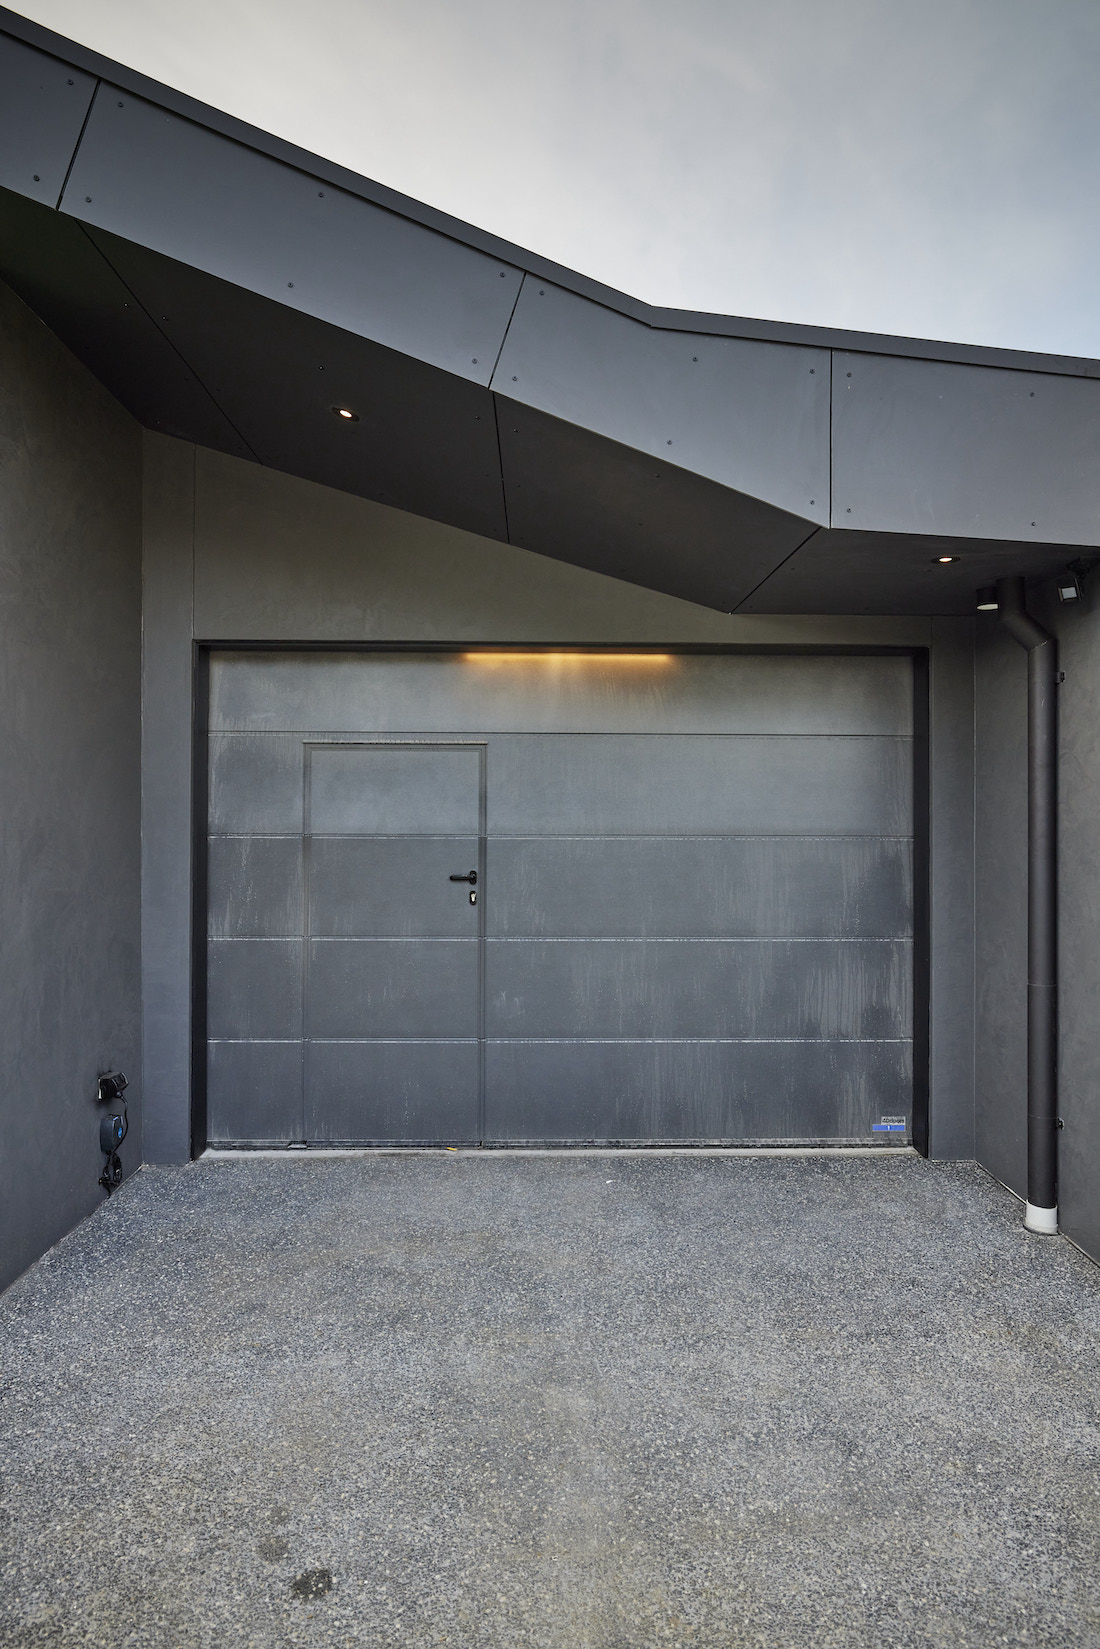 Single garage with a door within a door